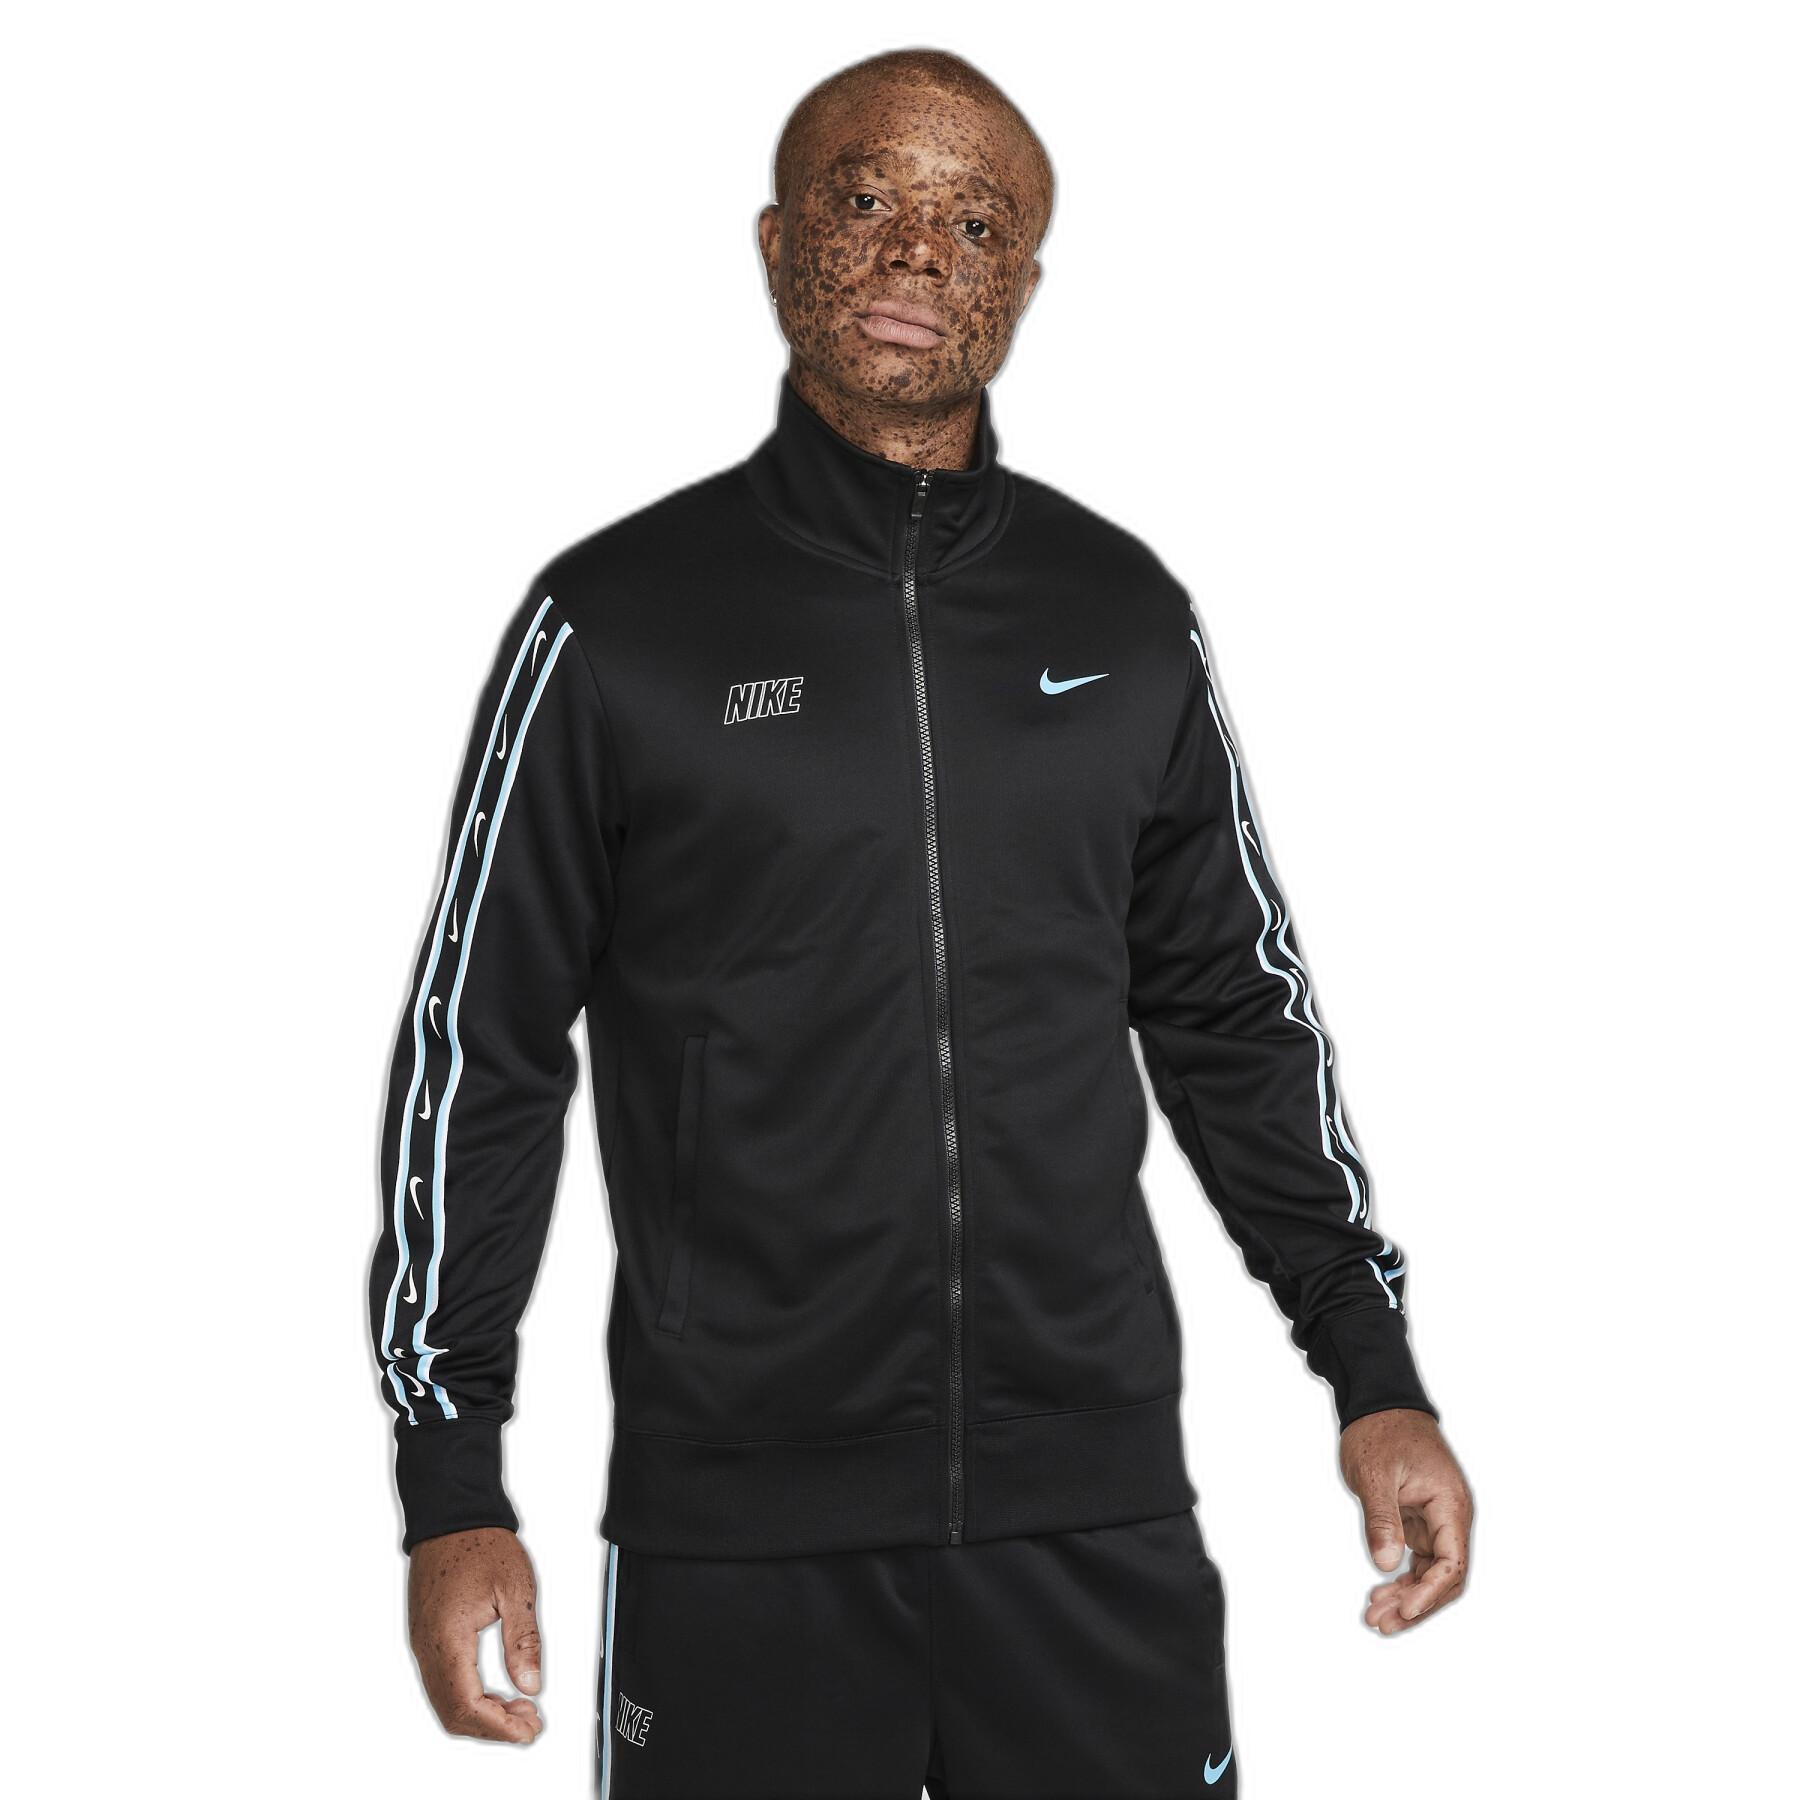 Sweat jacket Nike Repeat Polyknit